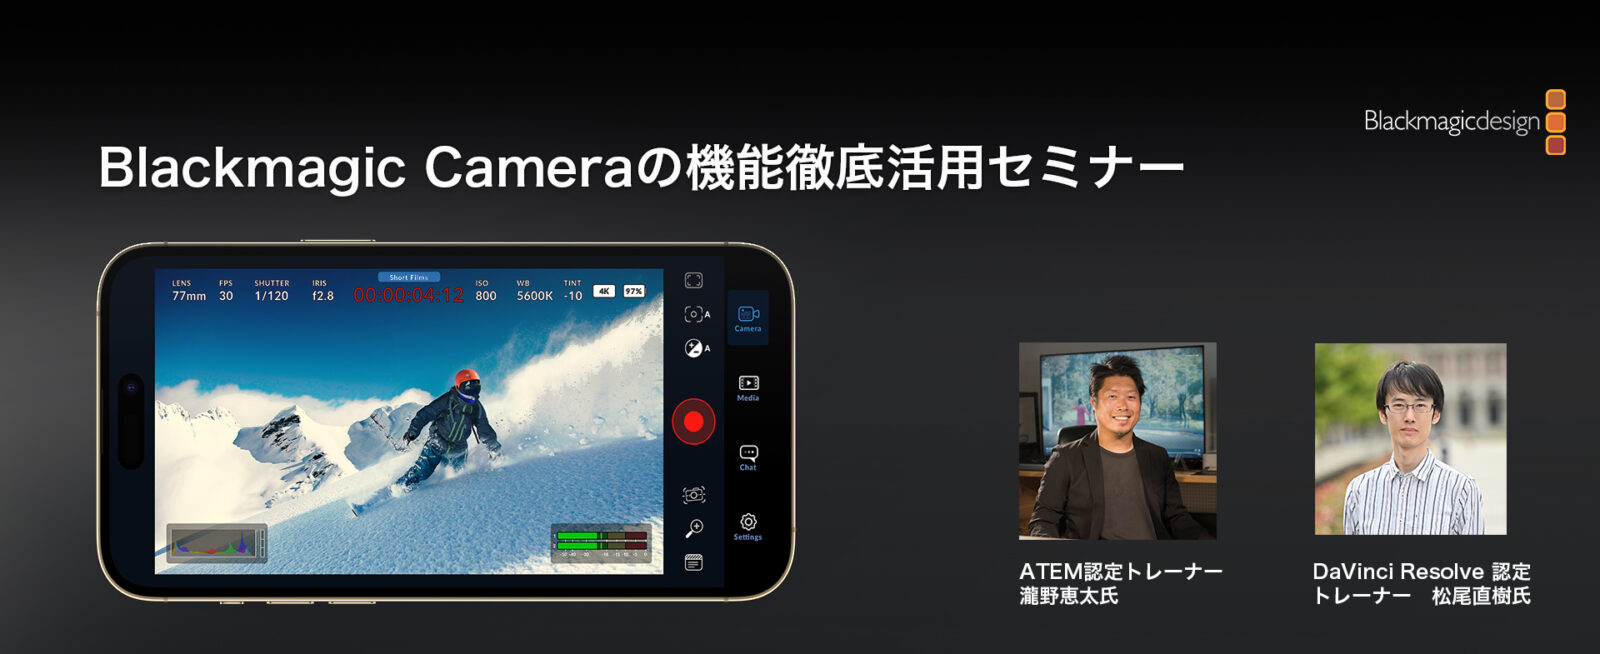 12/22 動画つくーるが BlackmagicCamera の徹底活用セミナーを開催